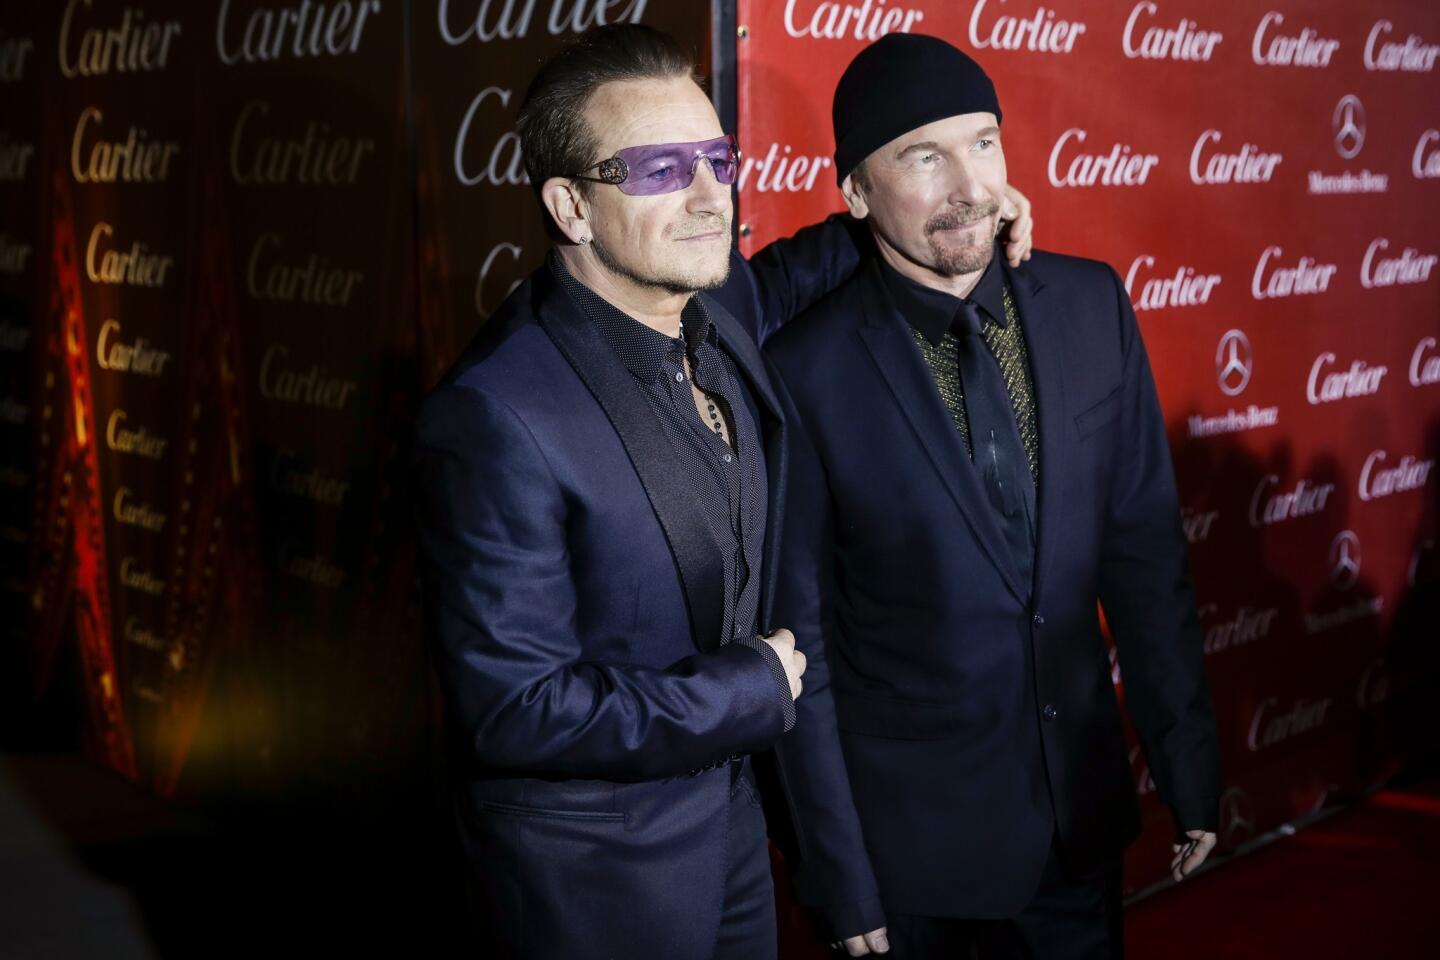 U2 members Bono, left, and the Edge.